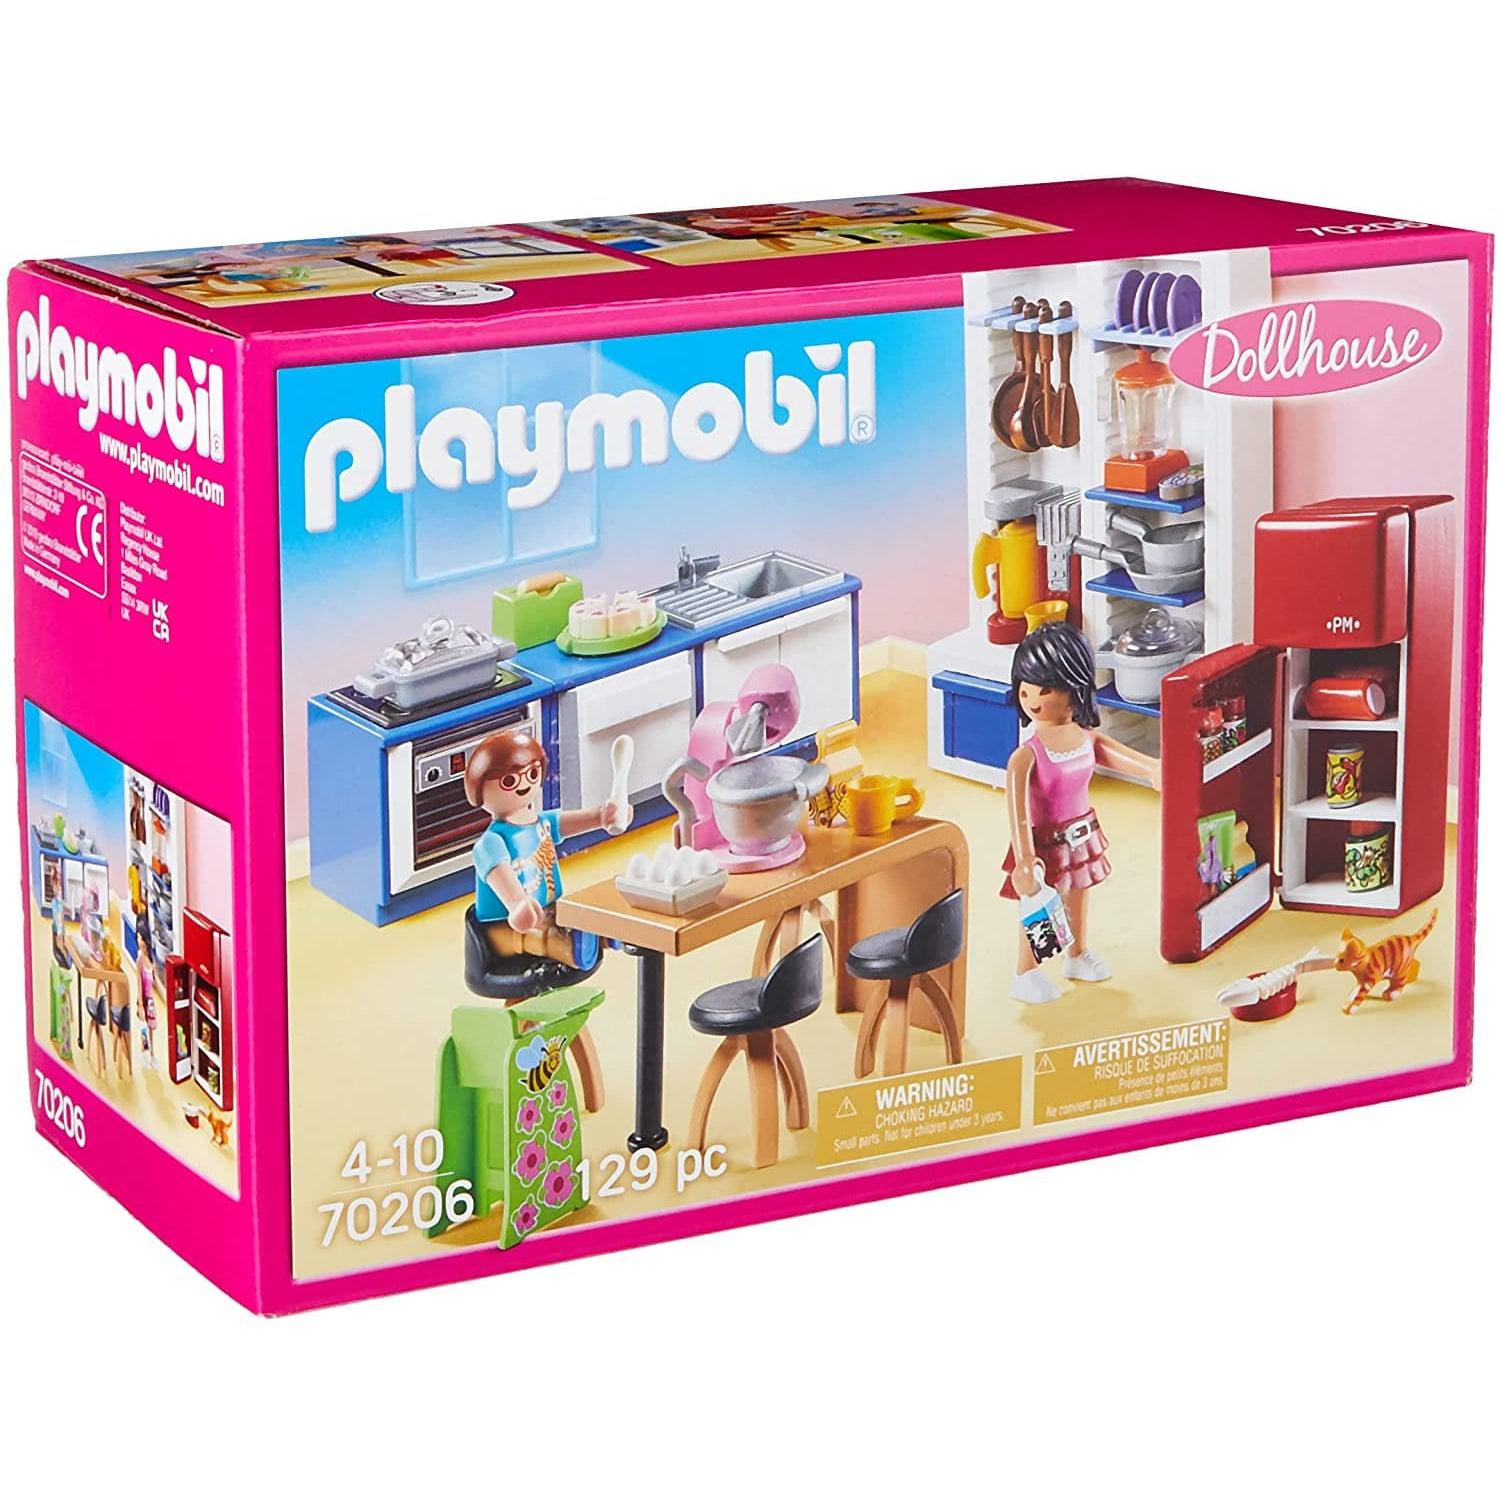 Playmobil-Dollhouse - Family Kitchen-70206-Legacy Toys